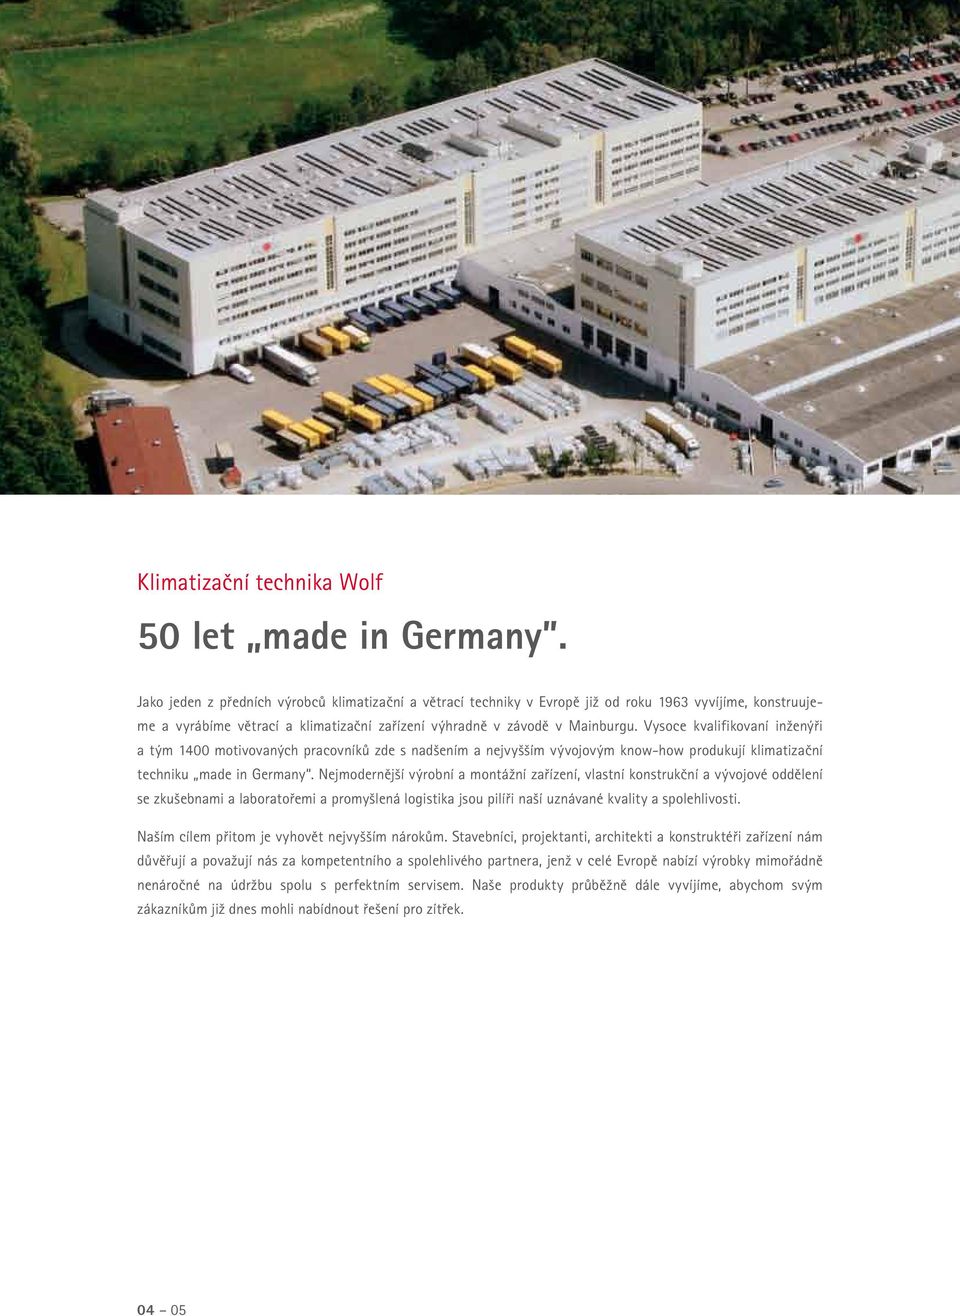 Vysoce kvalifikovaní inženýři a tým 1400 motivovaných pracovníků zde s nadšením a nejvyšším vývojovým know-how produkují klimatizační techniku made in Germany.